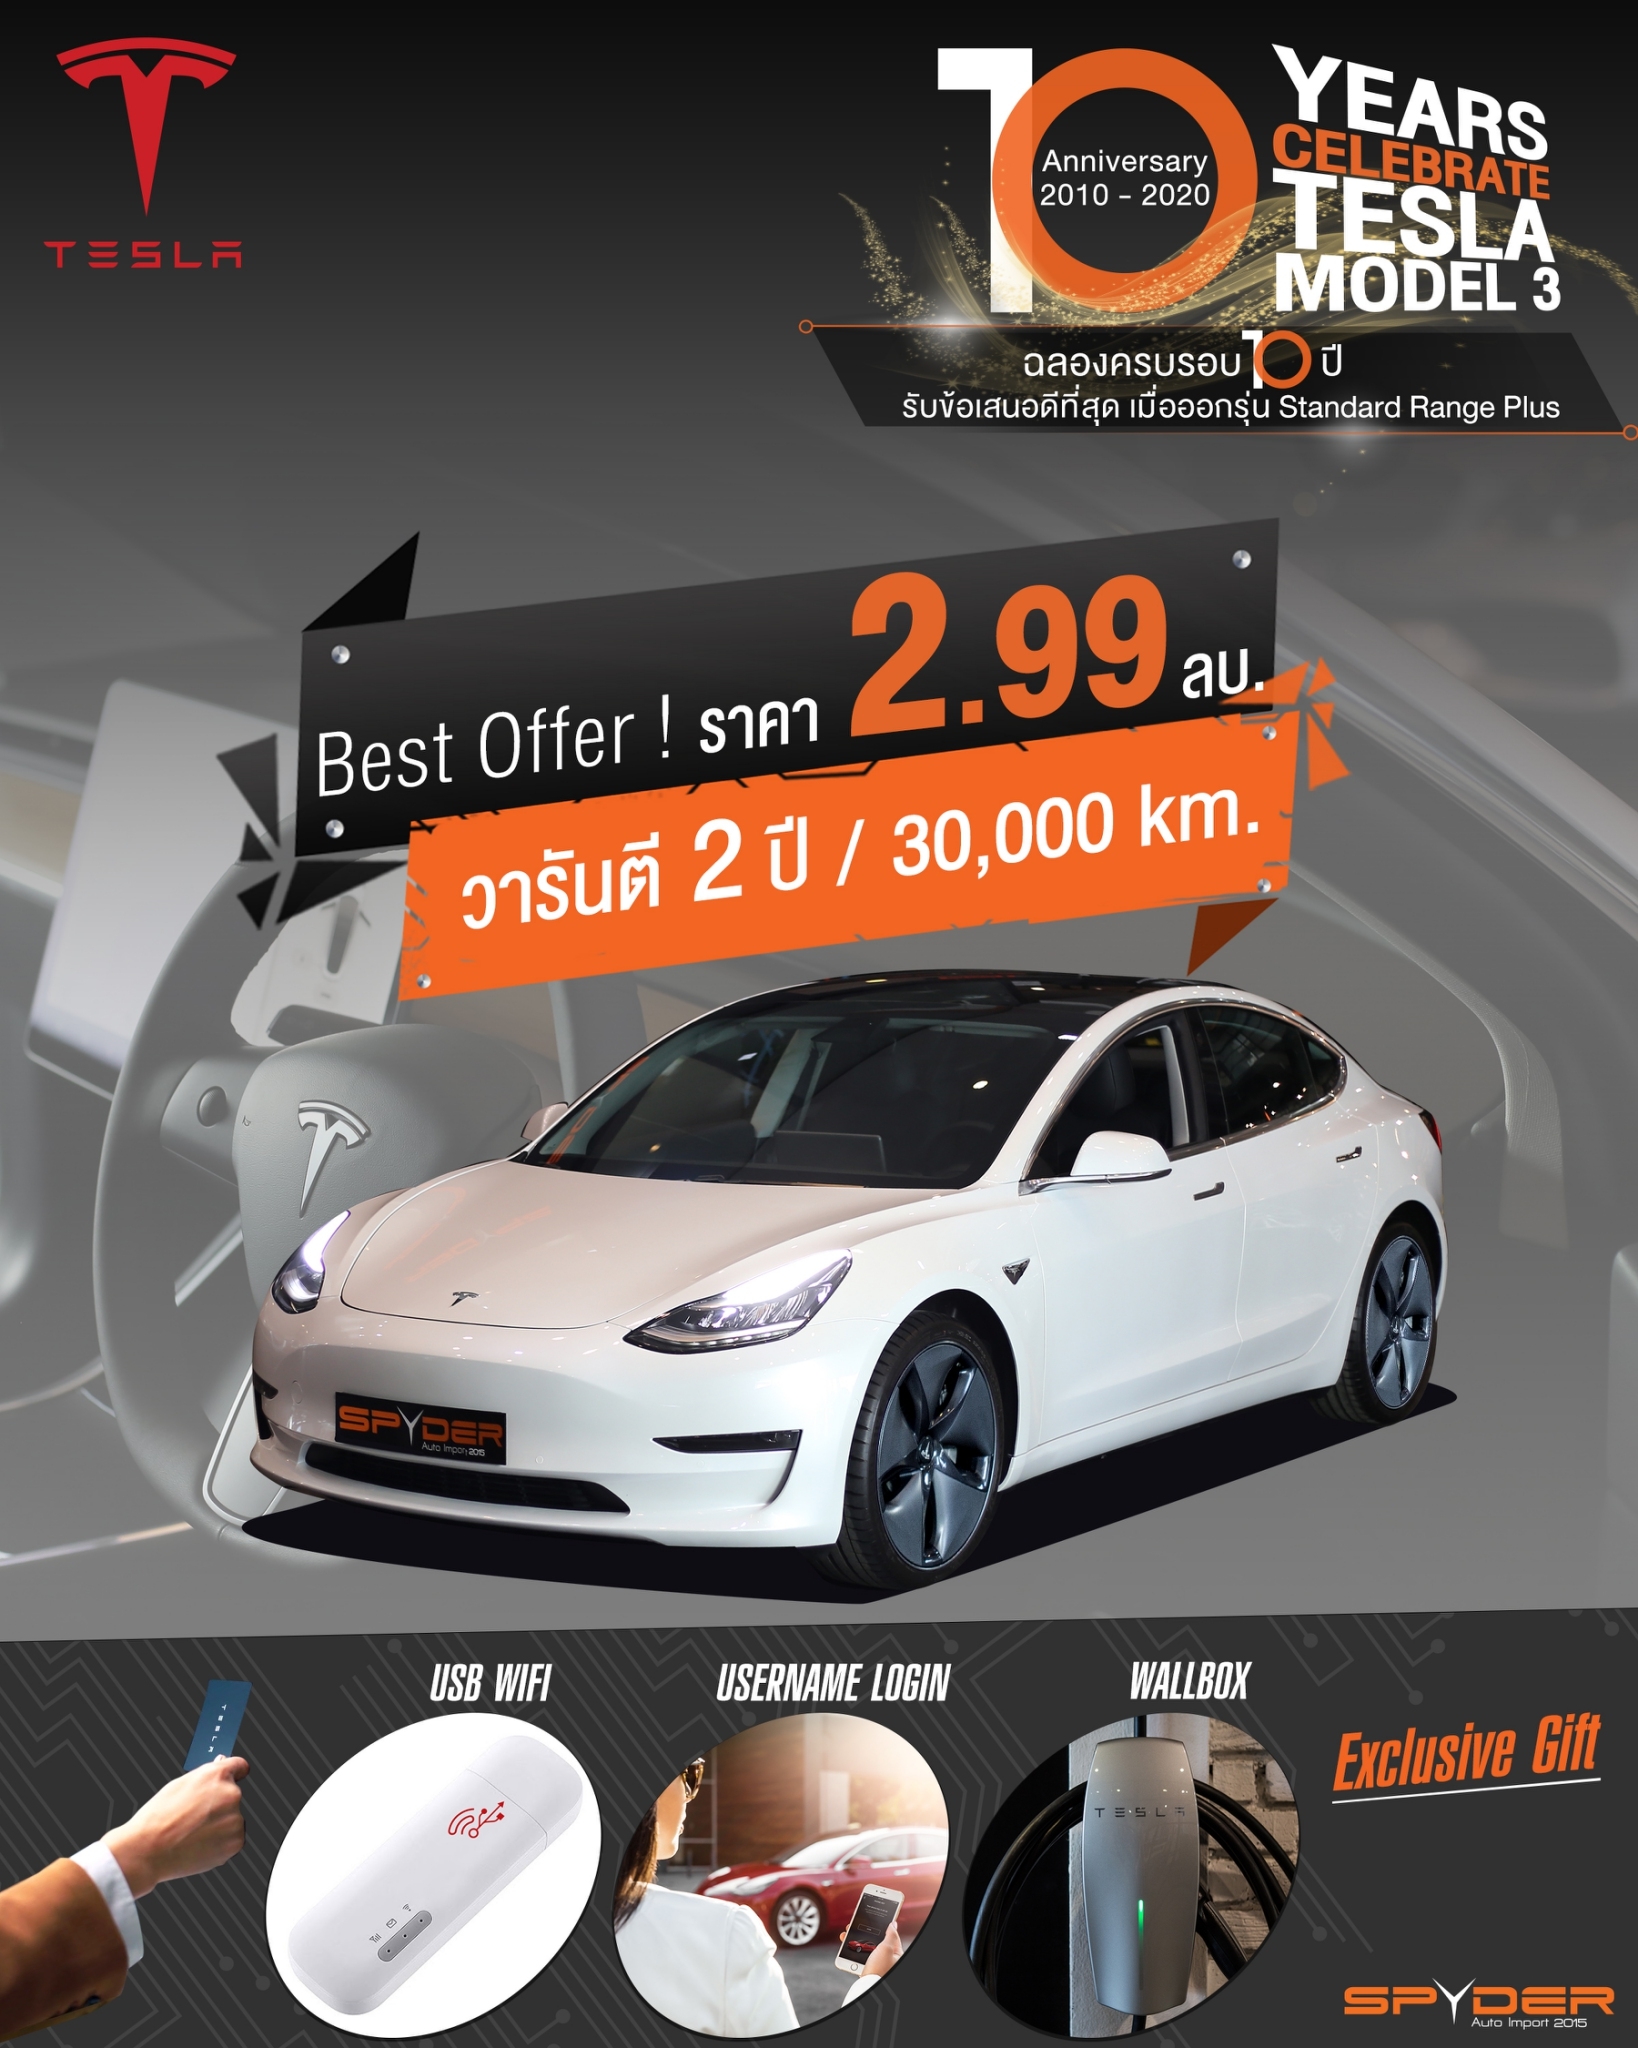 ราคารถยนต์ Tesla Model 3 ที่นำเข้ามาจำหน่ายในประเทศไทย ปี 2563 / 2020